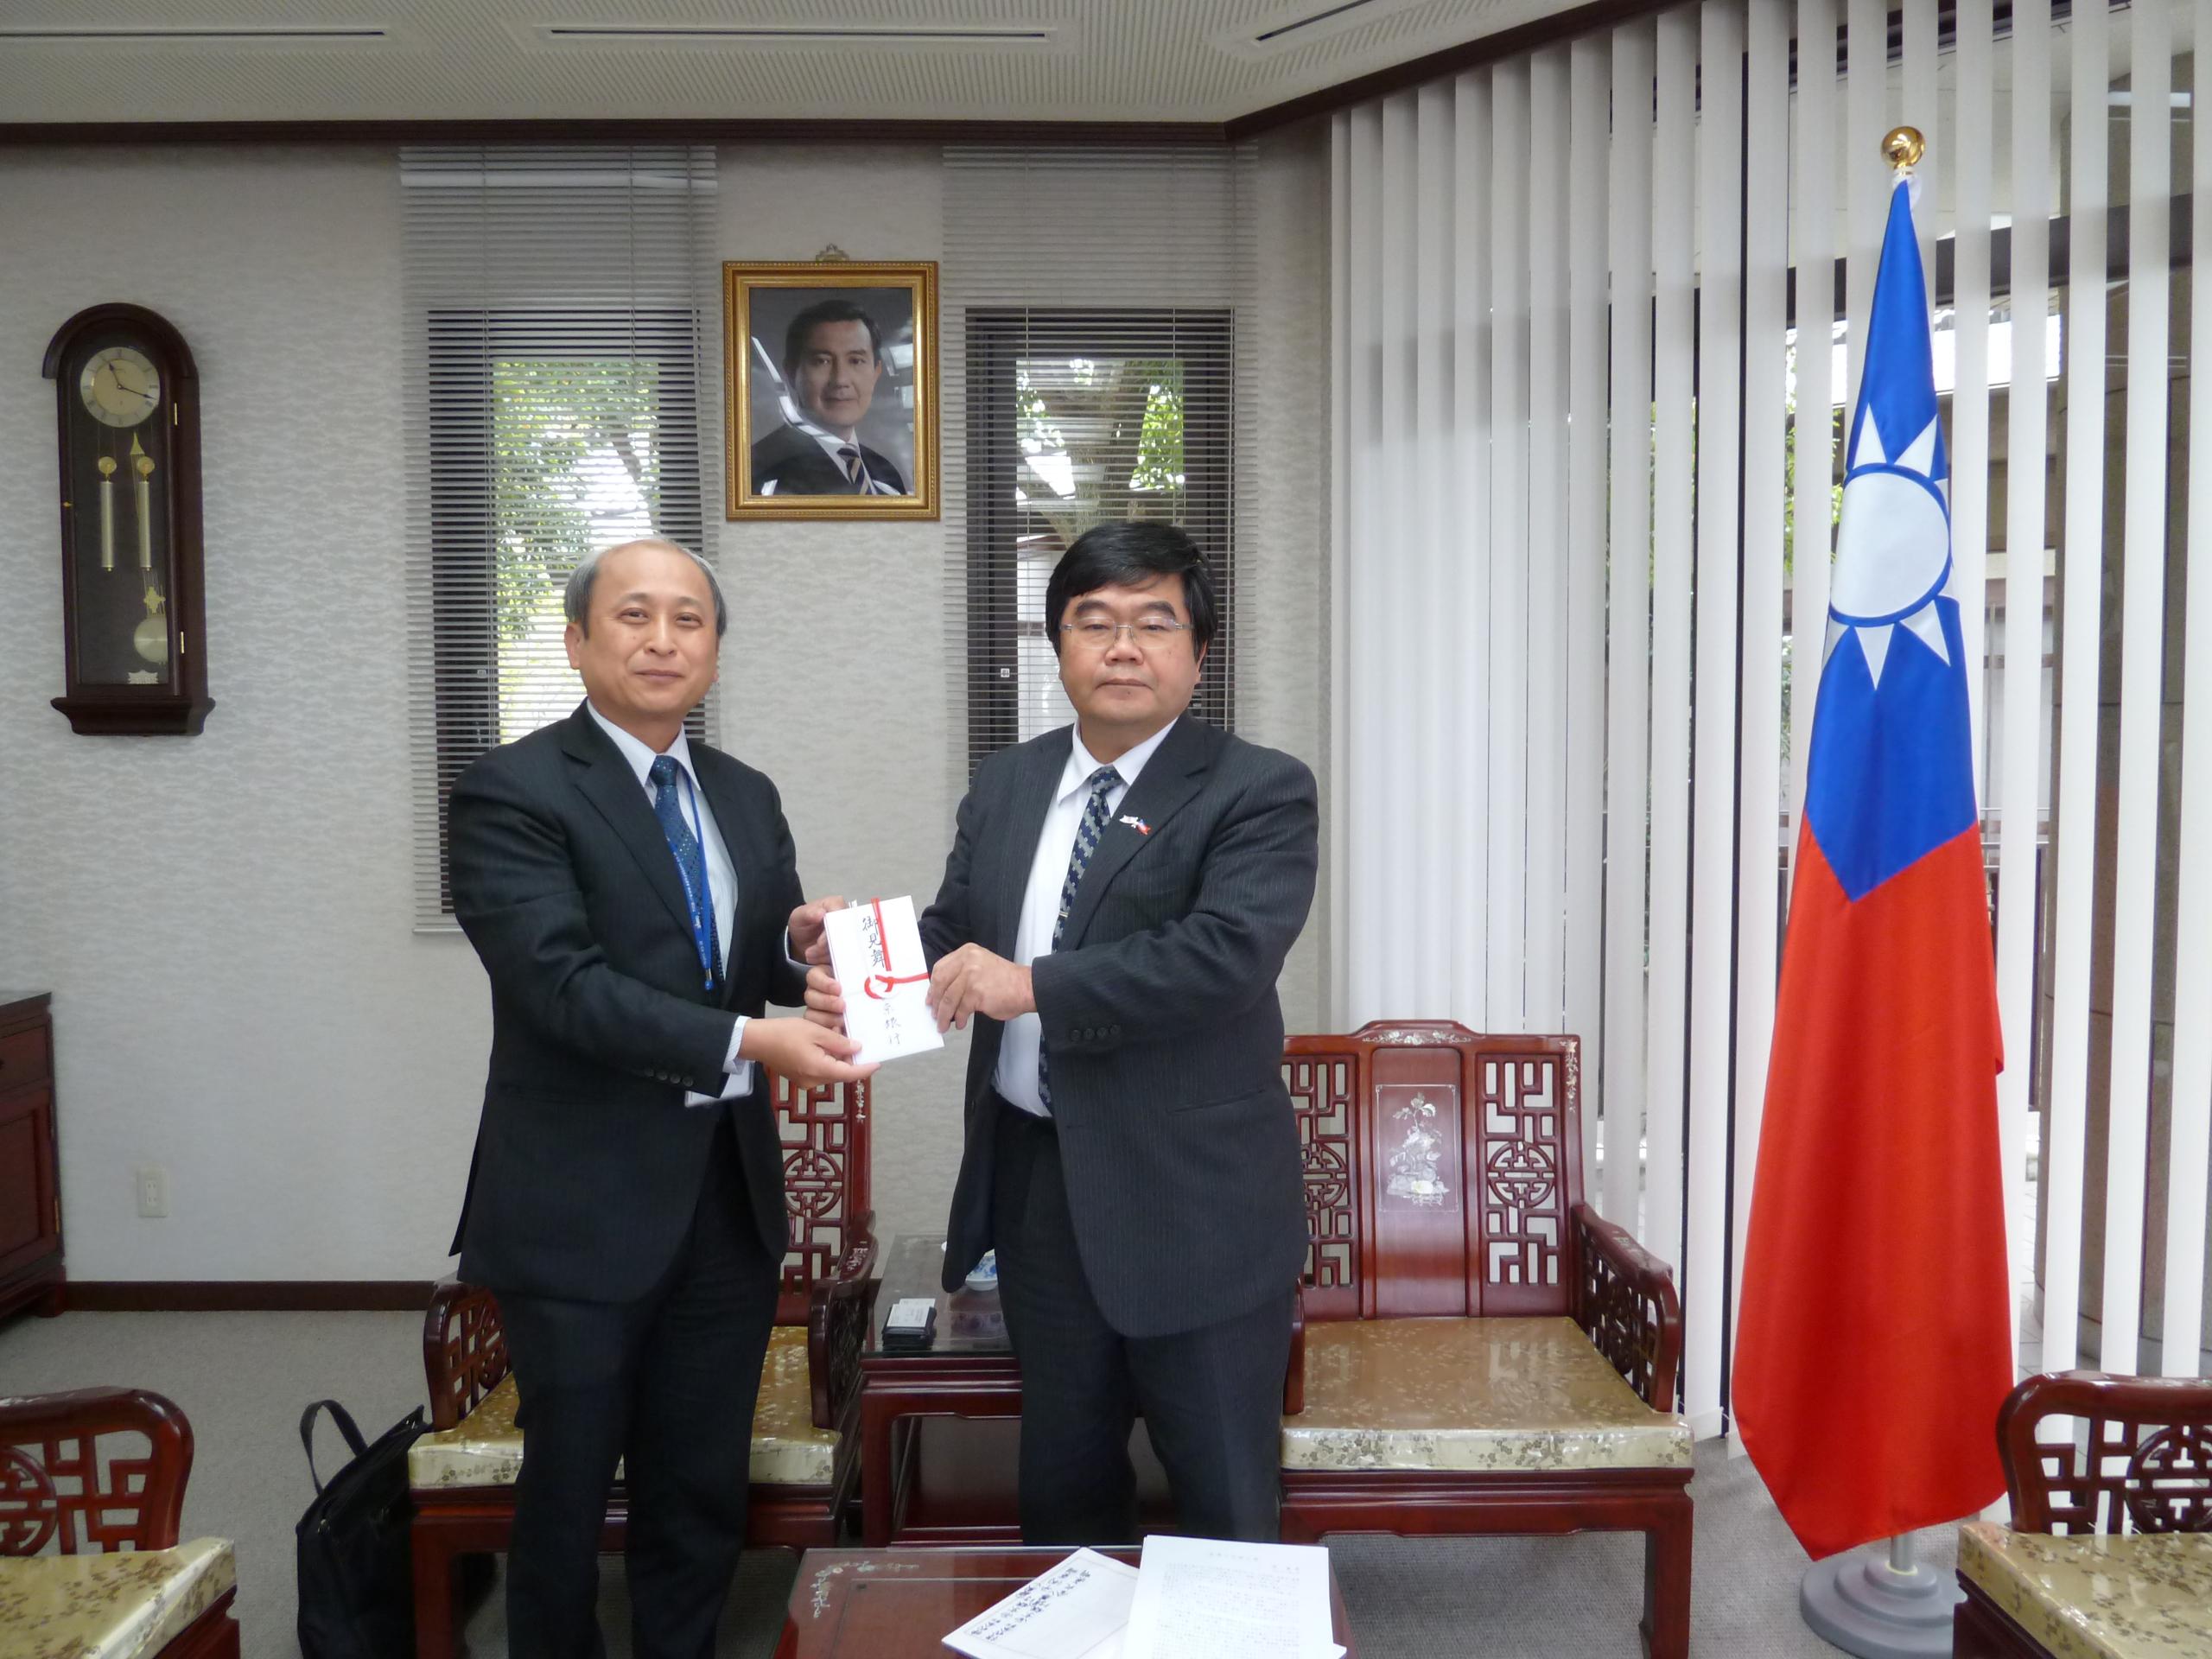 3/24西京銀行福岡支店石井邦知支店長が台湾南部大震災義援金を提供した。